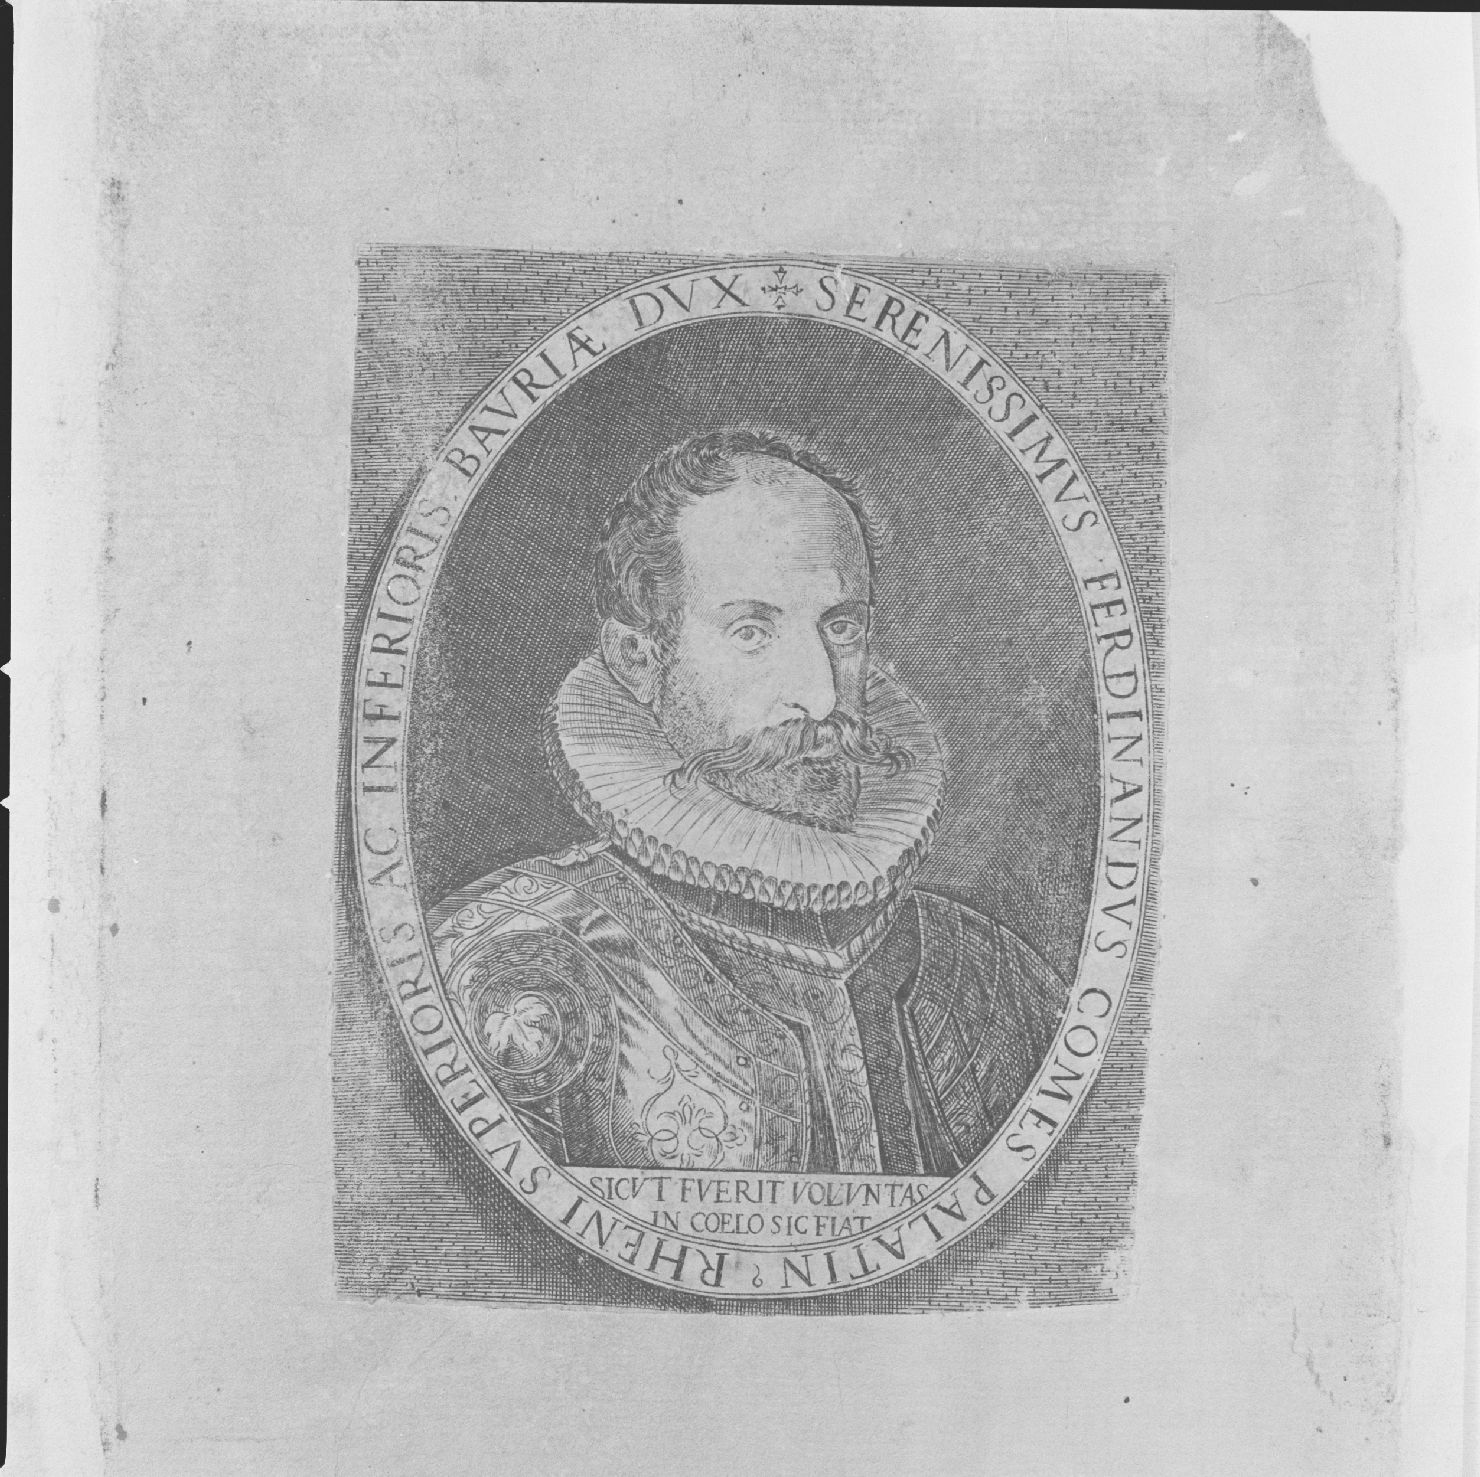 ritratto di Ferdinando conte di Renania e duca di Baviera (stampa) - ambito europeo, ambito europeo, ambito europeo (primo quarto sec. XVII)